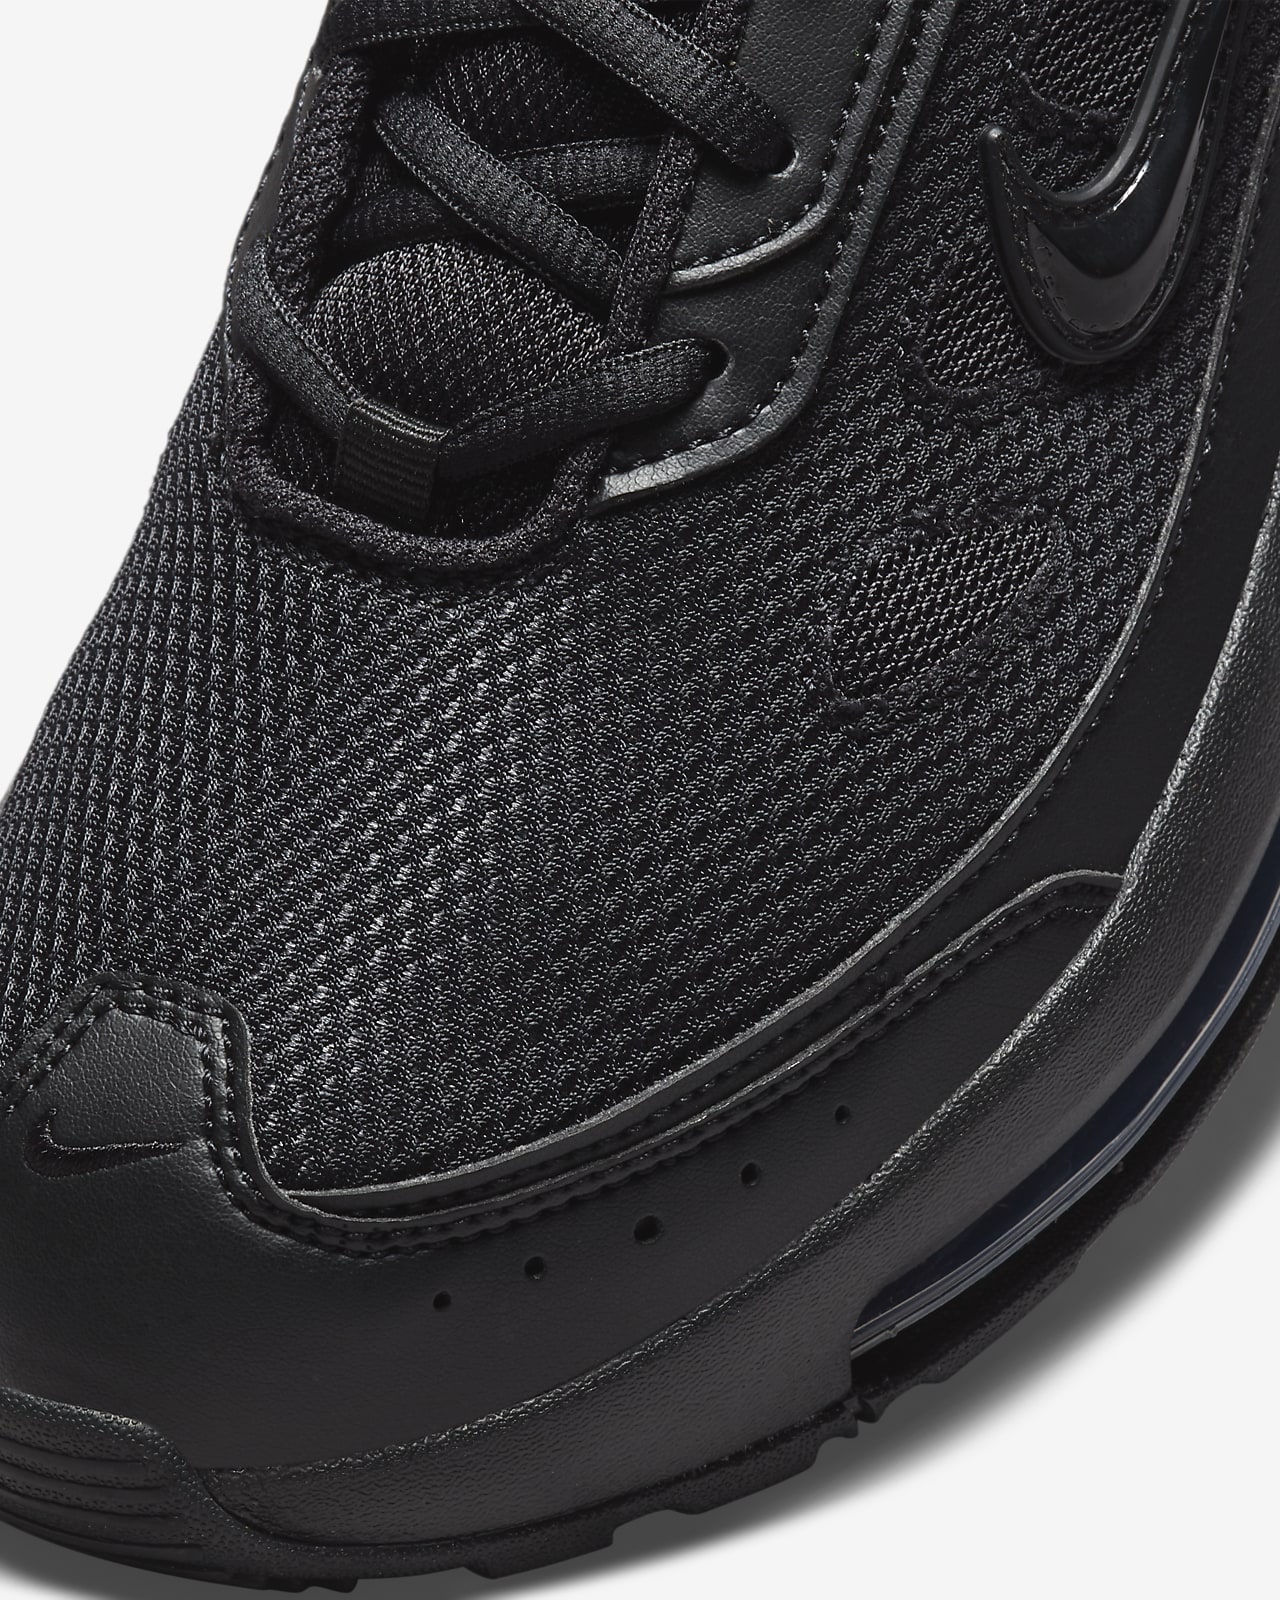 Nike, Shoes, Custom Nike Air Max 27 Shoes Black